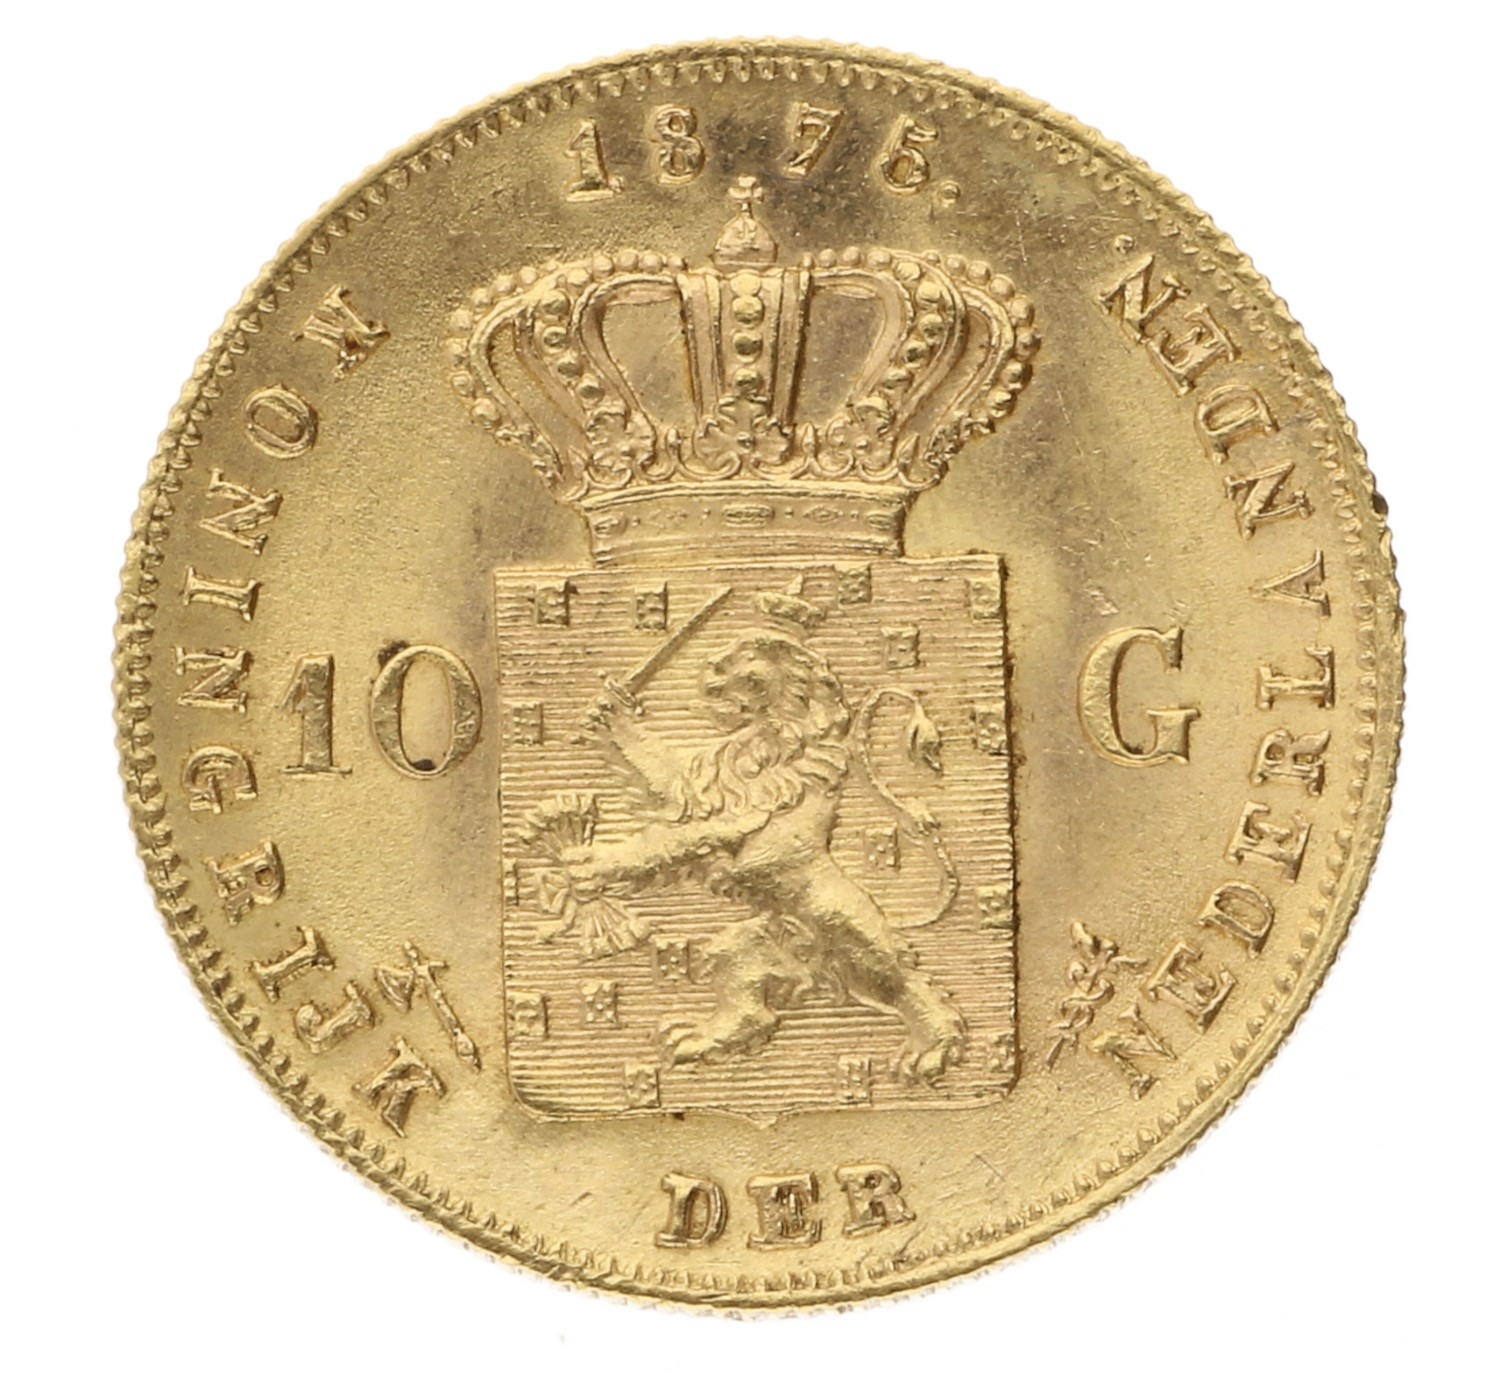 10 Gulden - Netherlands - 1875